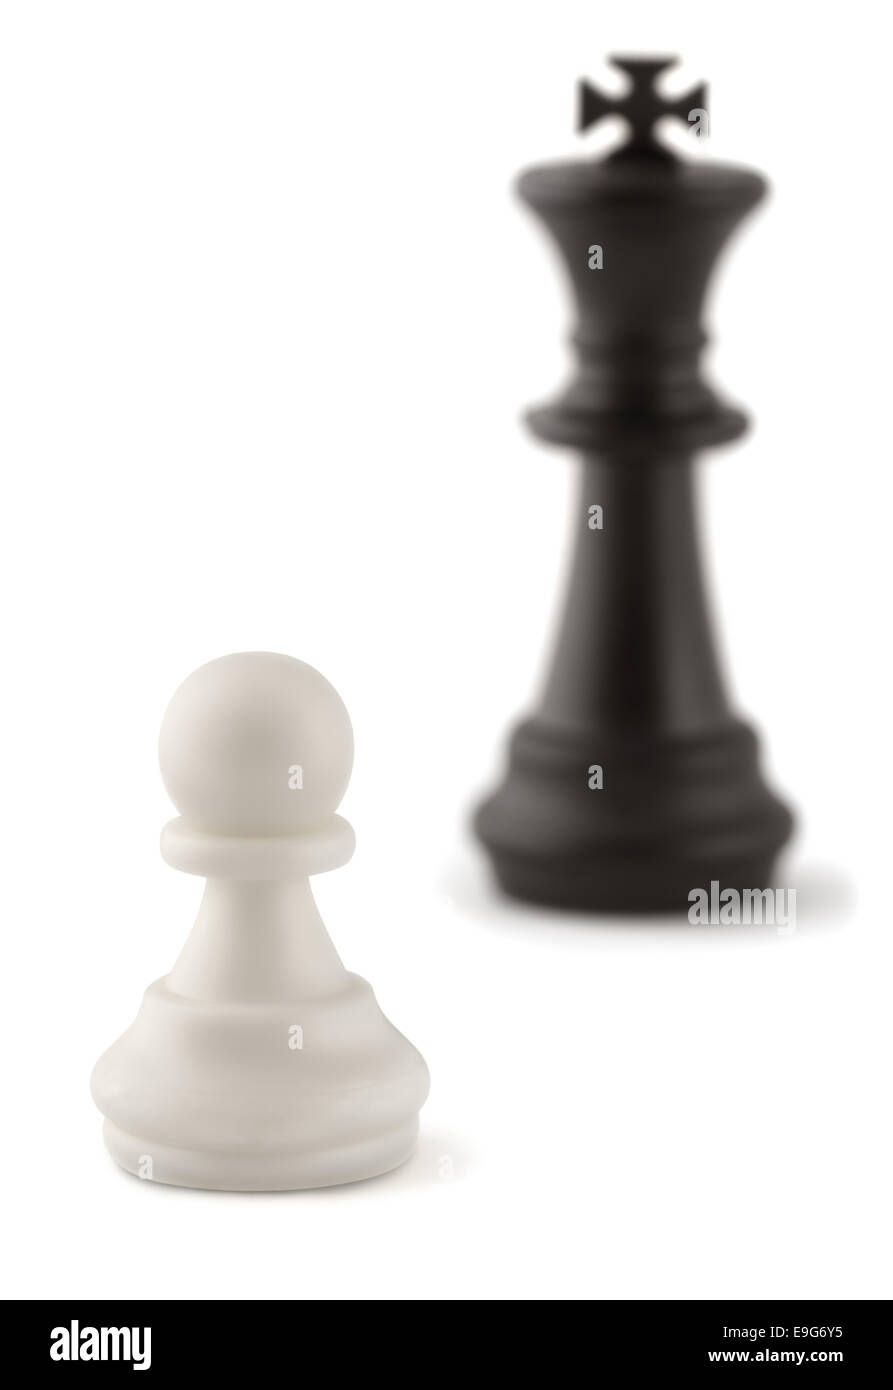 Y el rey peón de ajedrez Foto de stock